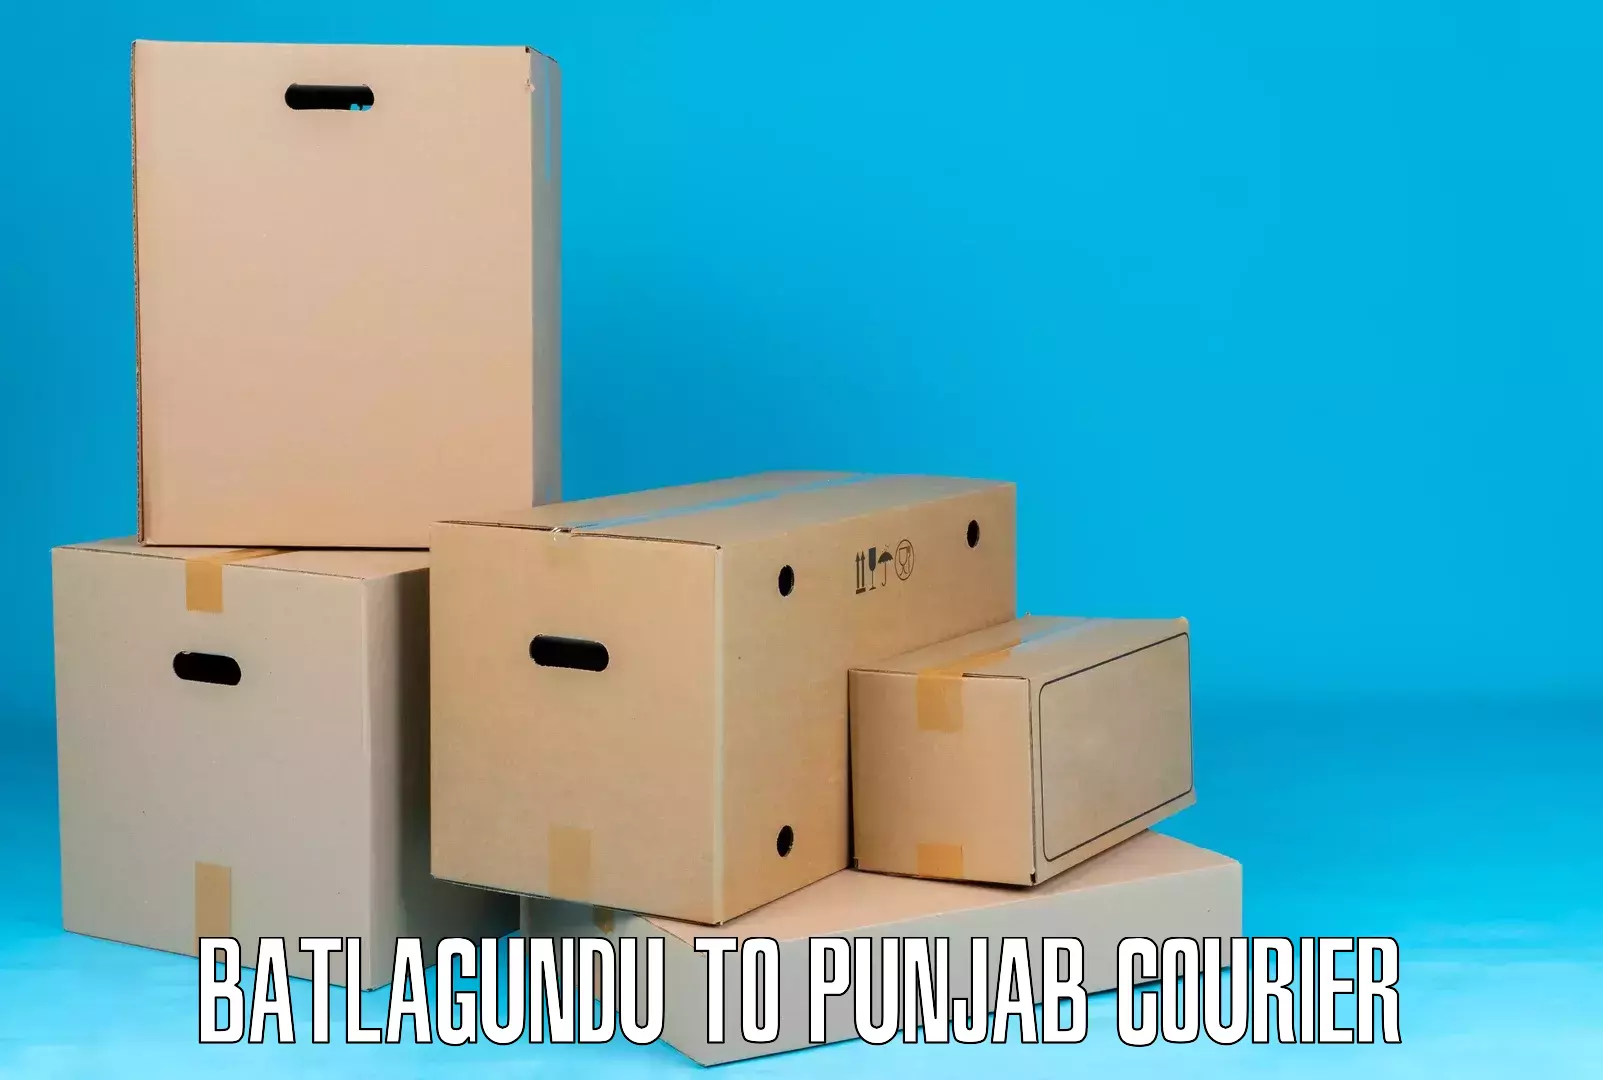 Expedited parcel delivery in Batlagundu to Punjab